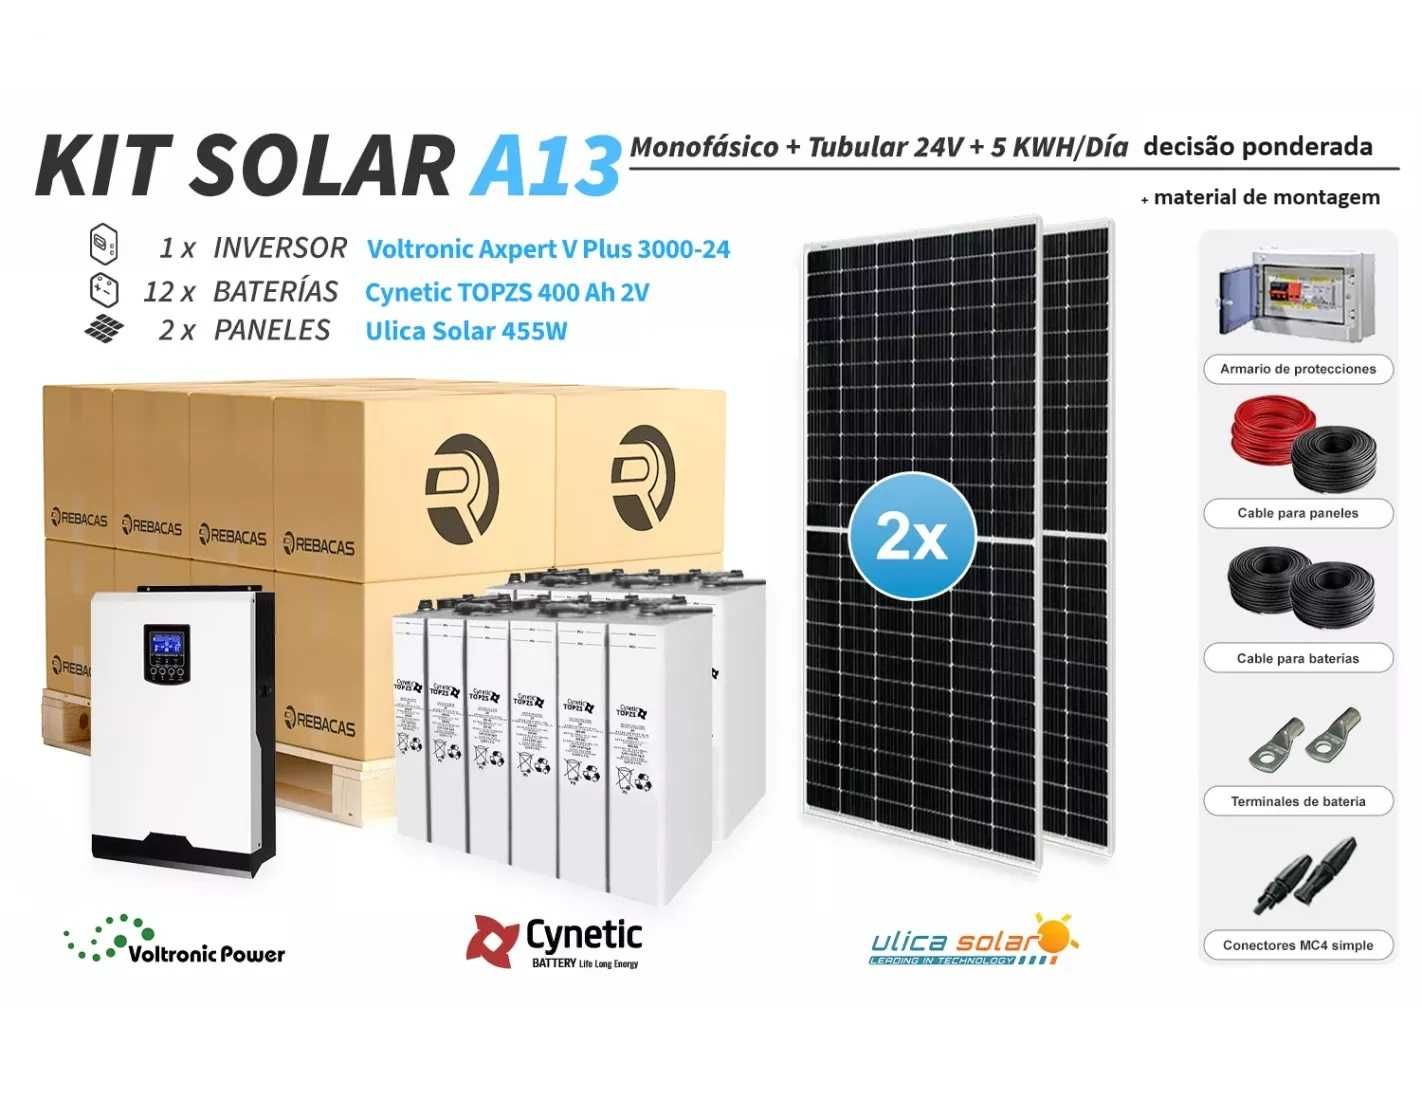 Kit solar isolado 13 2500|5000 Wh dia TOPZS: